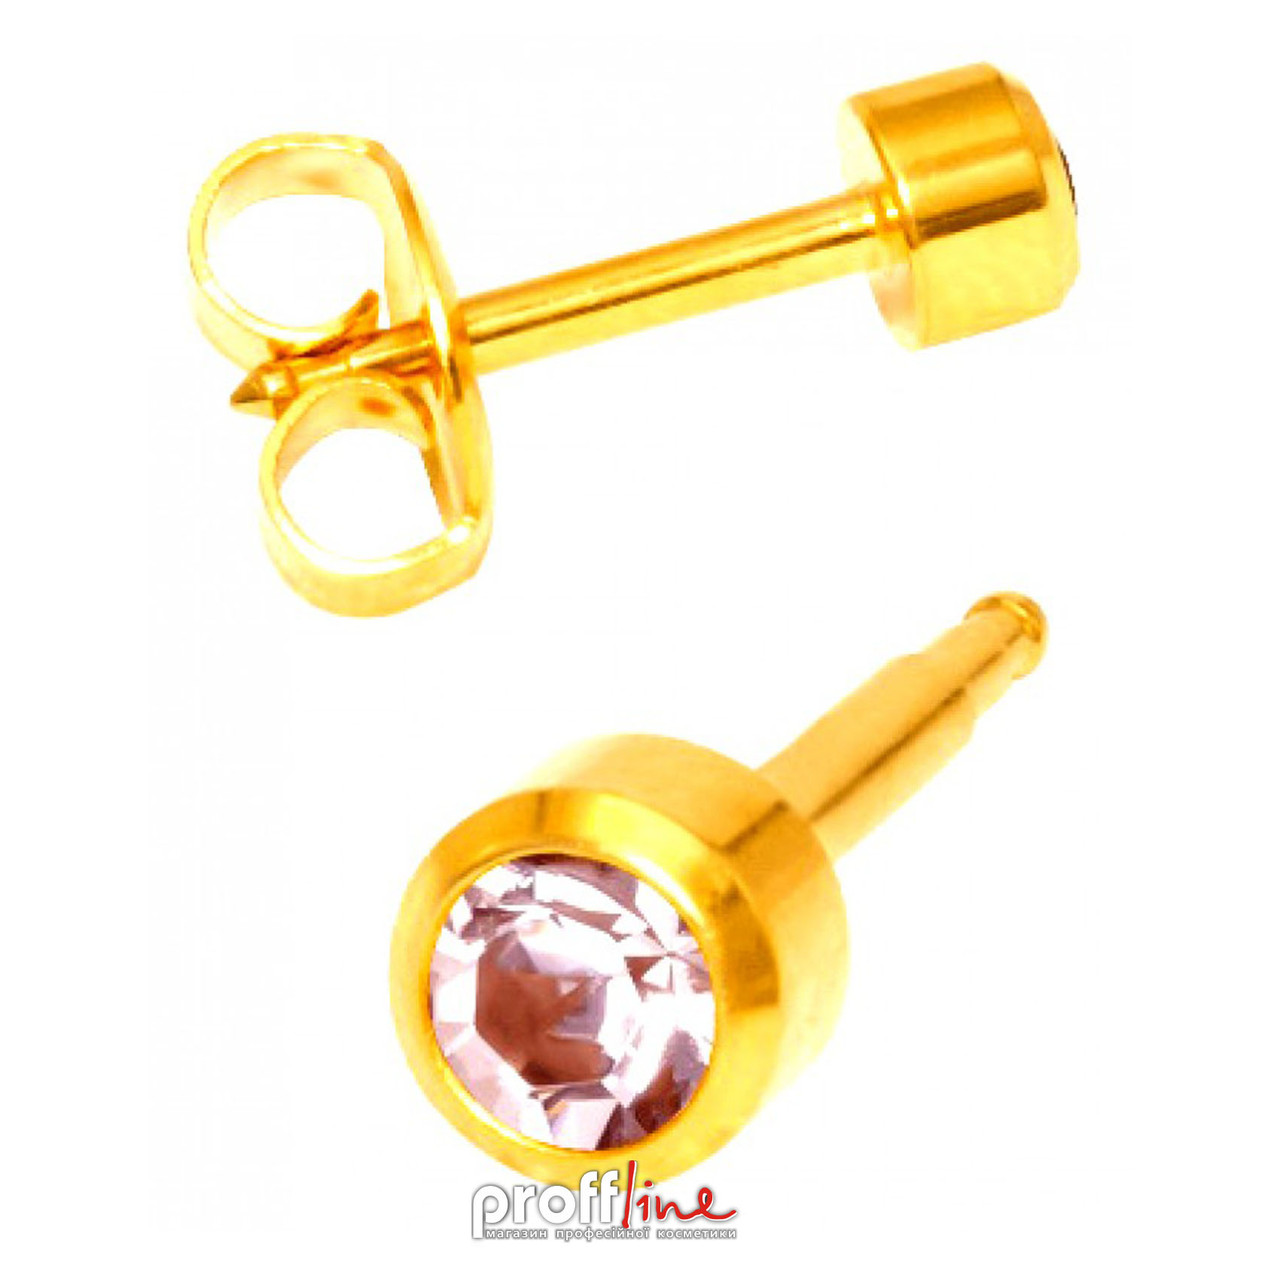 Сережки Caflon олександрит у золотій оправі 3 мм (стерильні) (Арт. yb6r)